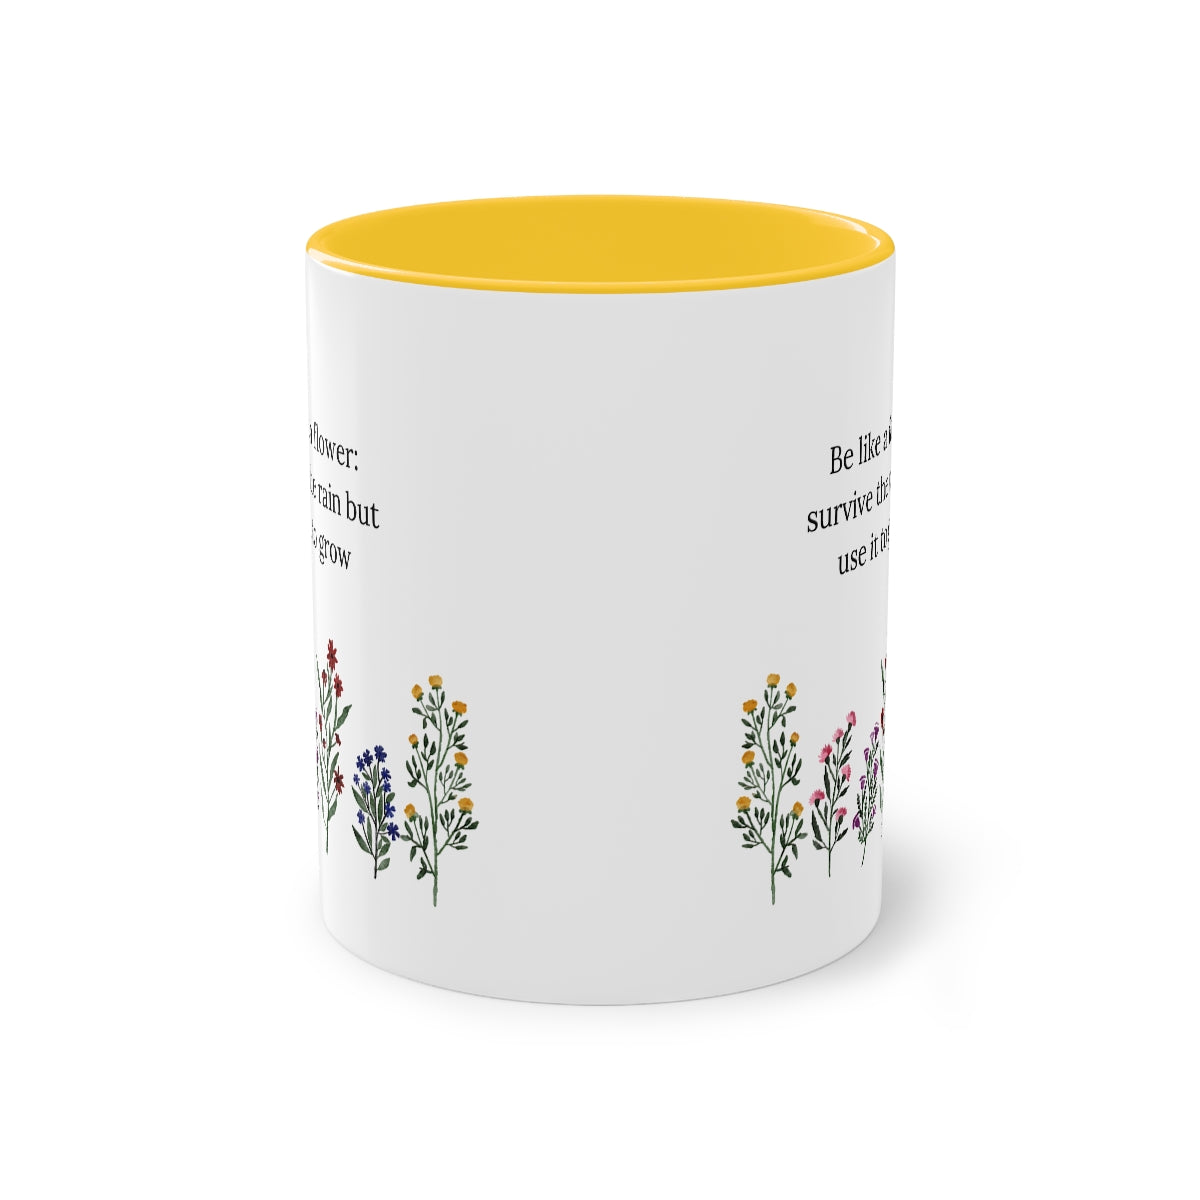 Be Like A Flower Two-Tone Coffee Mug, 11oz